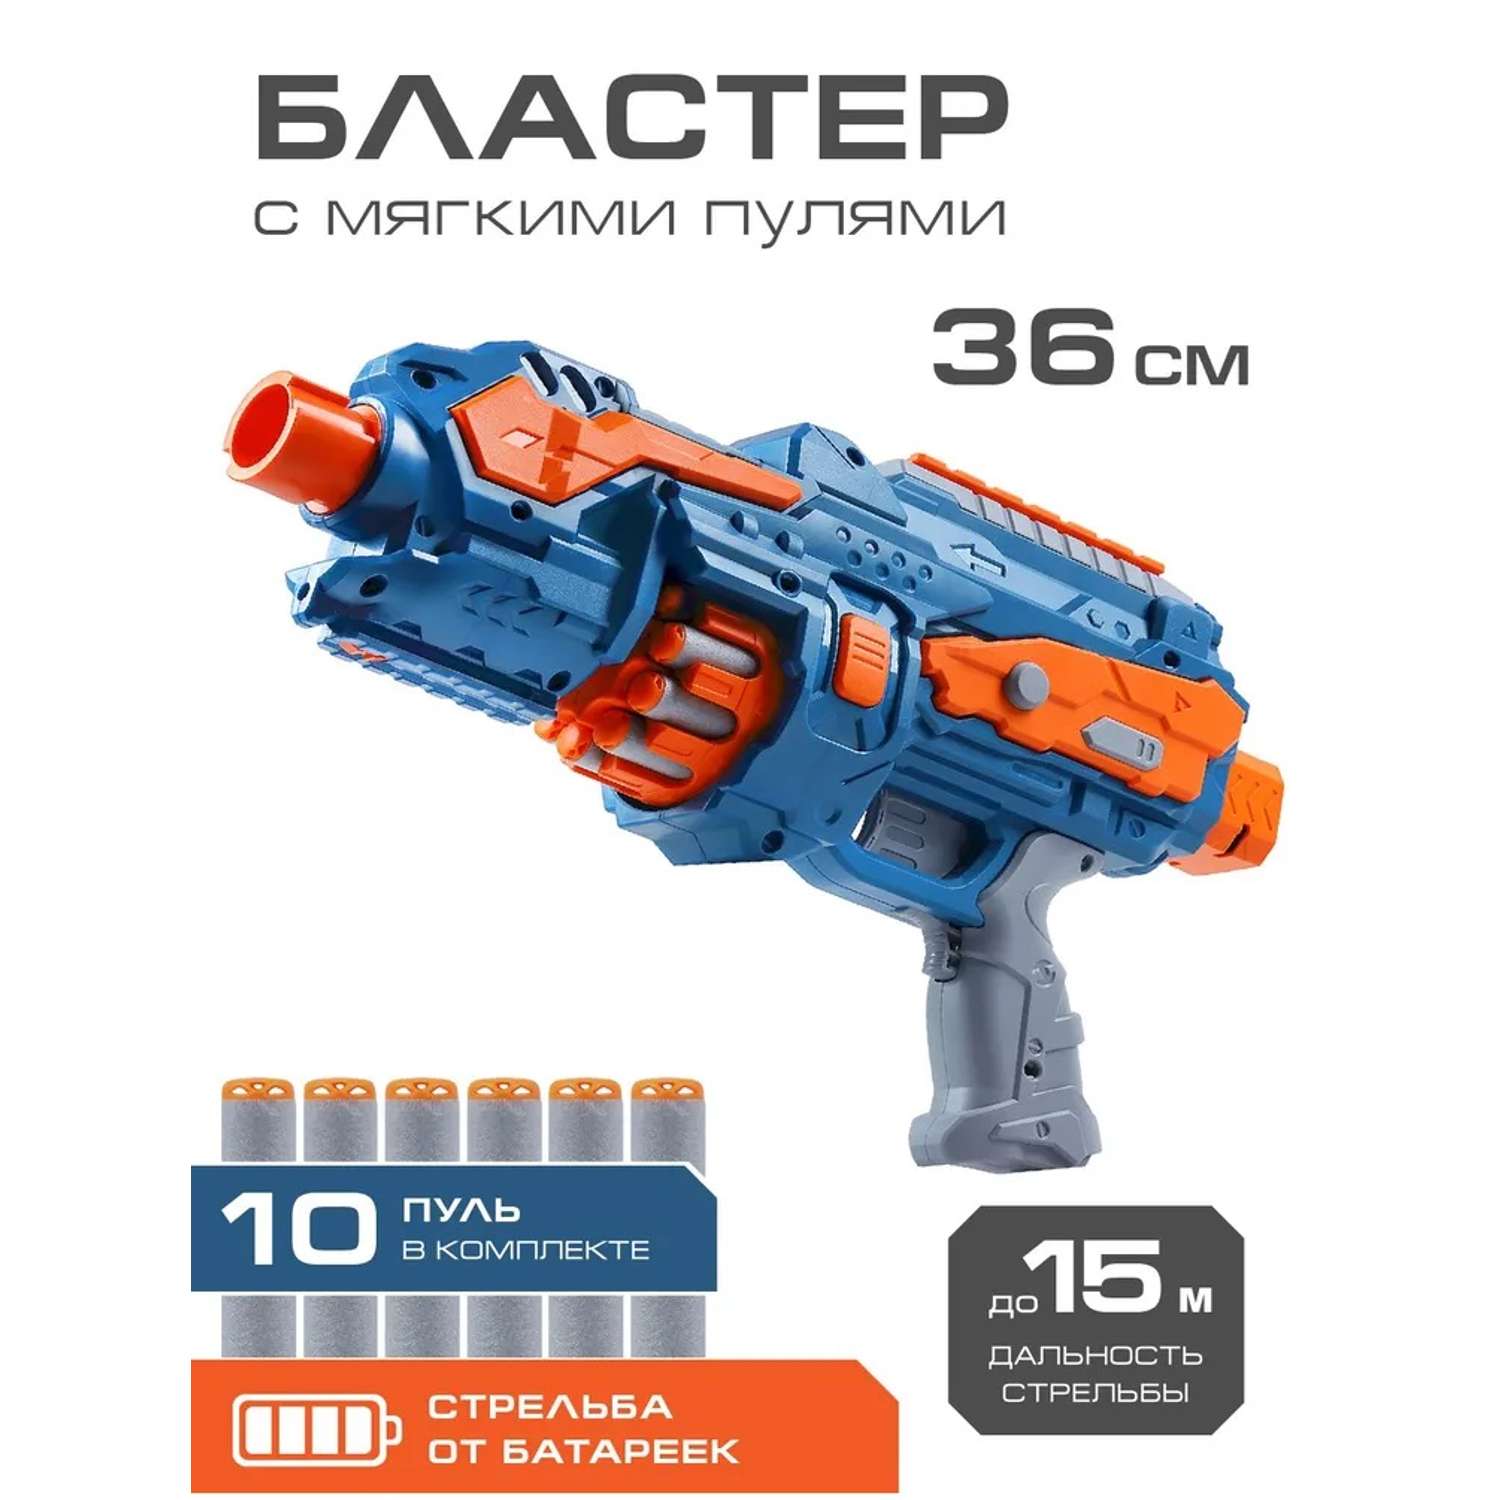 Игрушечное оружие Маленький Воин Бластер с мягкими пулями на батарейках 10 пуль в комплекте JB0211182 - фото 1